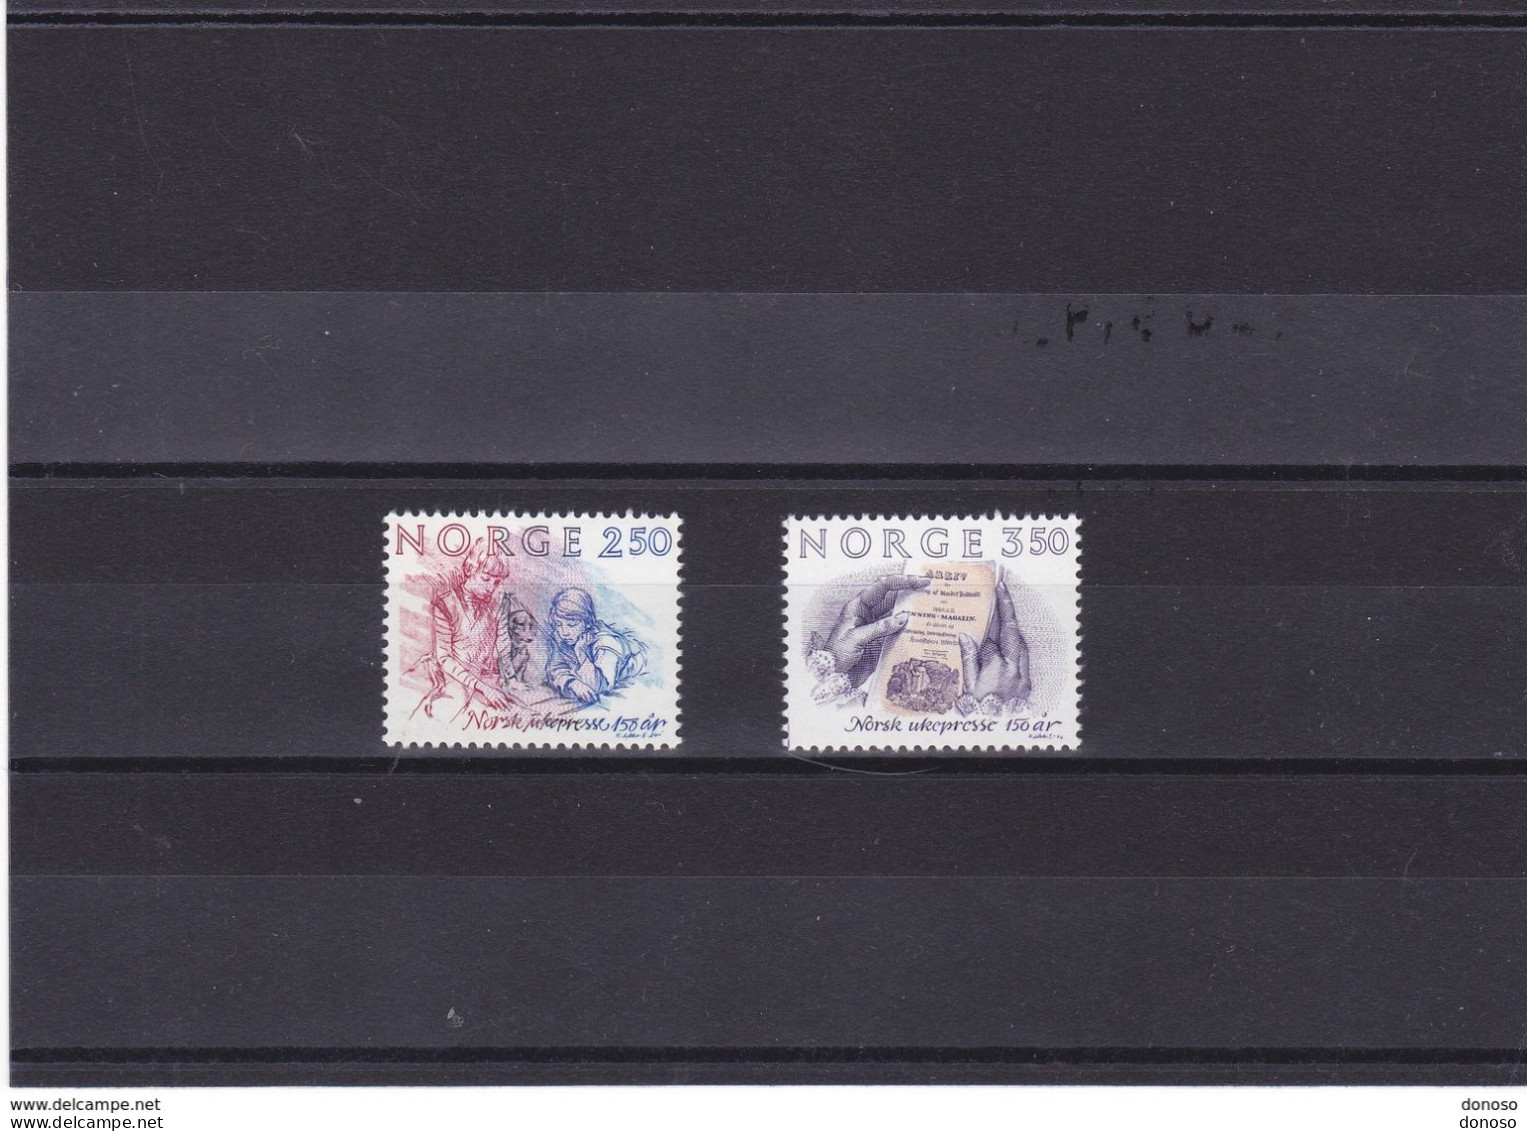 NORVEGE 1984 LA PRESSE Yvert 867-868 NEUF** MNH - Unused Stamps